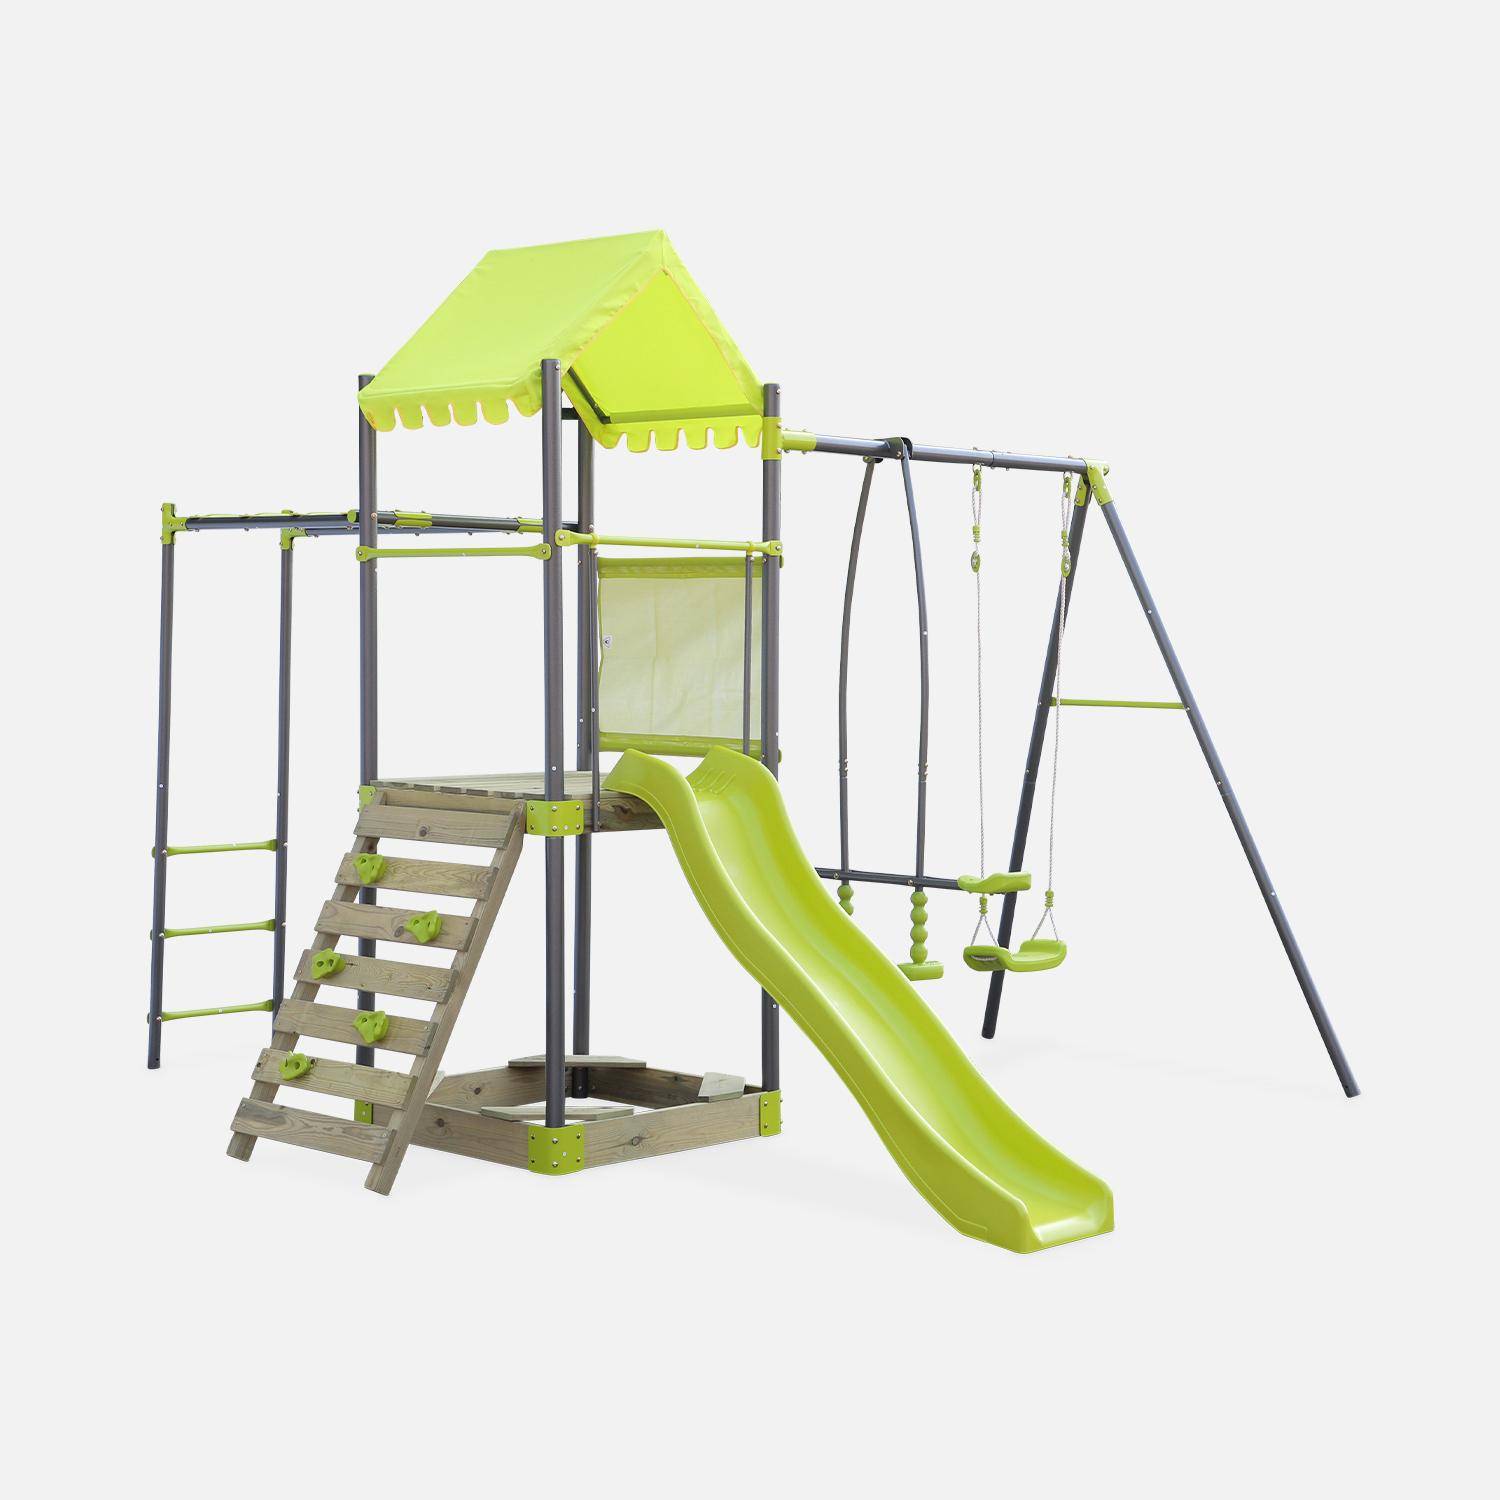 Aire de jeux pour enfants verte acier et bois, toboggan, bac à sable, mur d'escalade, trébuchet, plateforme cabane GALERNE Photo1